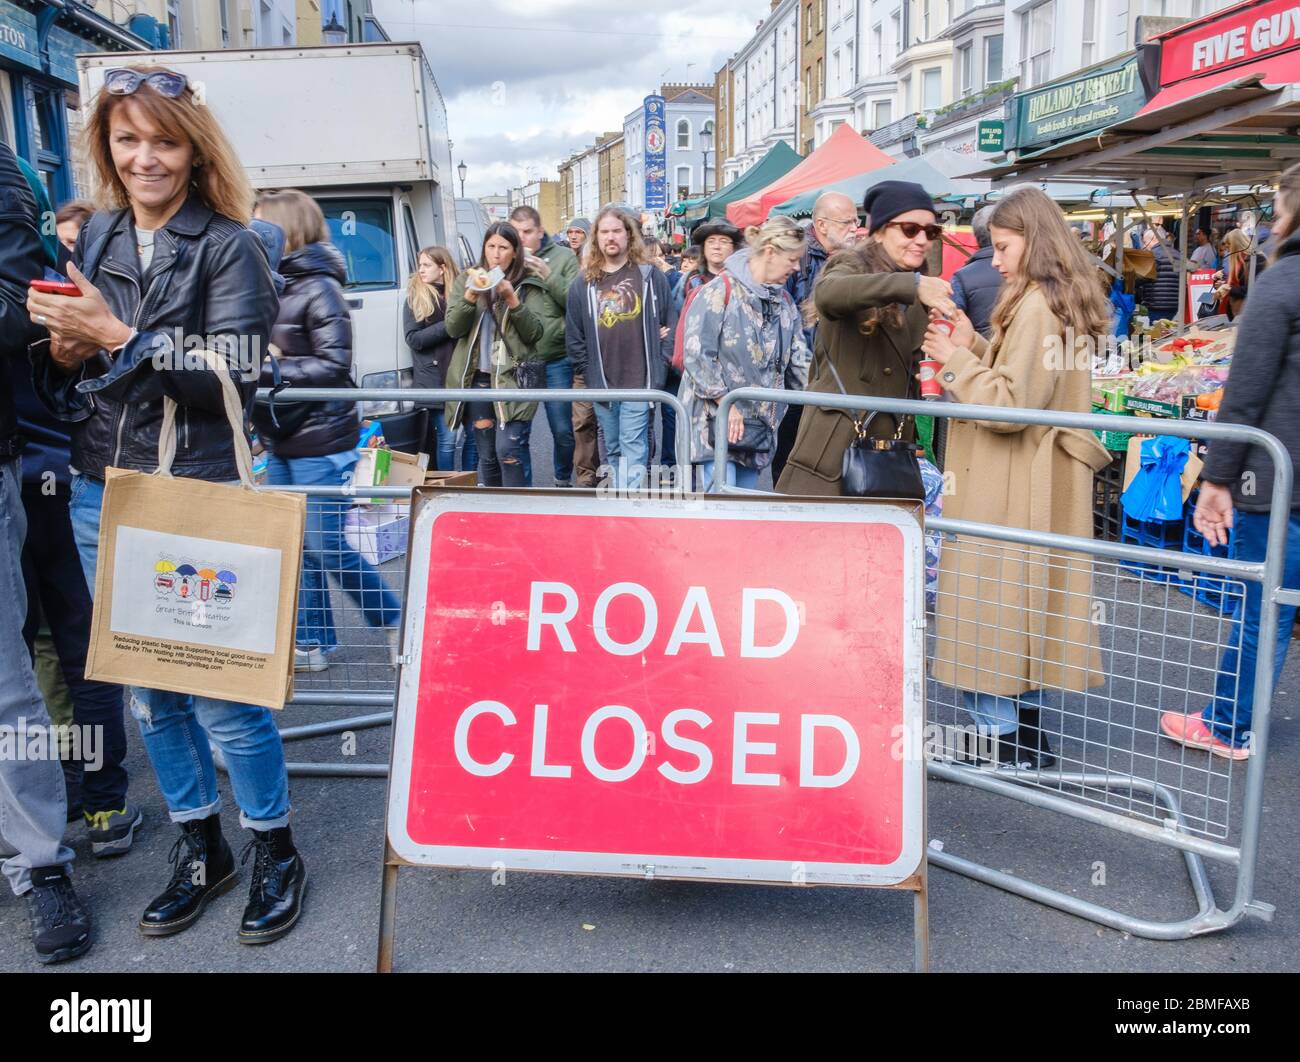 Cartello stradale chiuso con folla di pedoni al mercato di Portobello. Londoners & turisti shopping & godere una giornata fuori. Portobello Road, Notting Hill Foto Stock